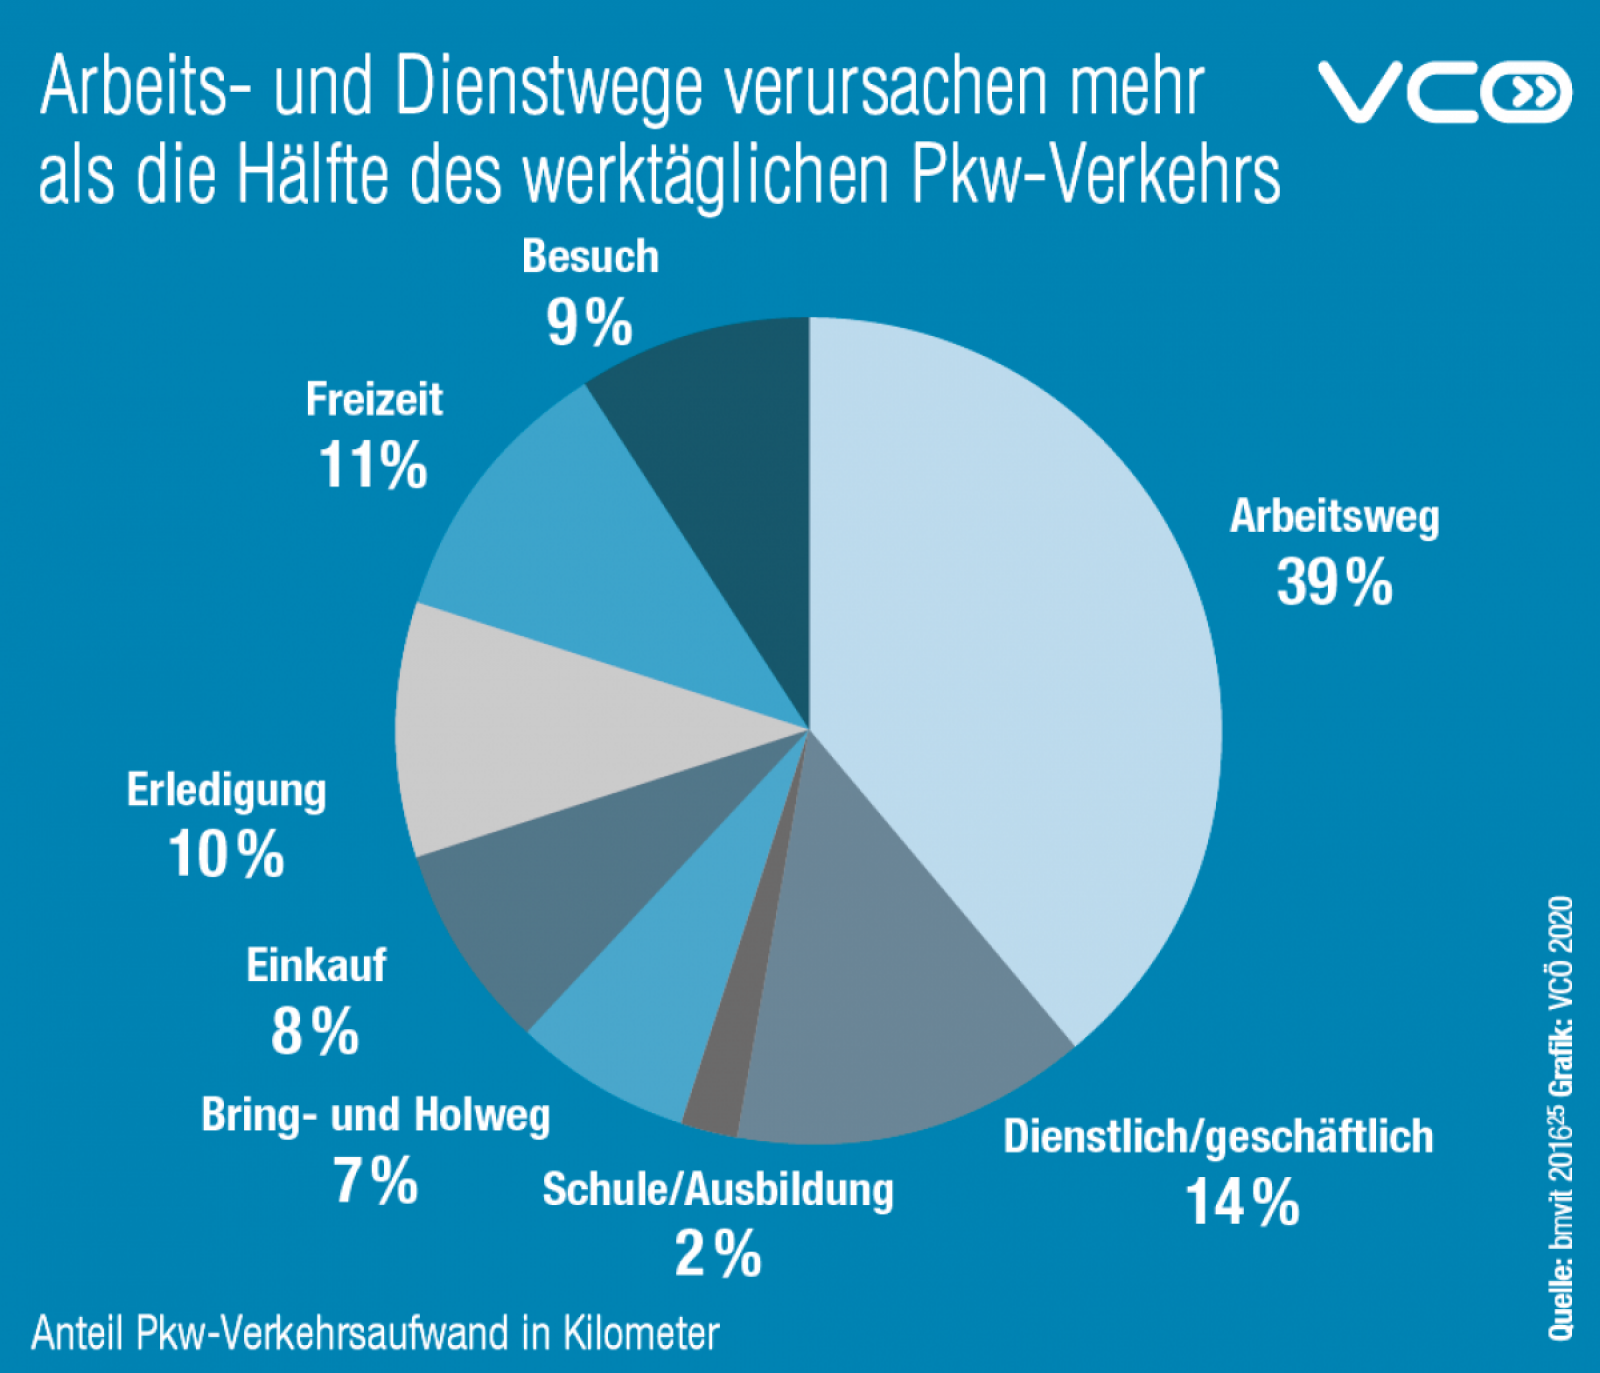 Grafik der Arbeits- und Dienstwege in Österreich: SIe verursachen mehr als die Hälfte des werktäglichen PKW-Verkehrs